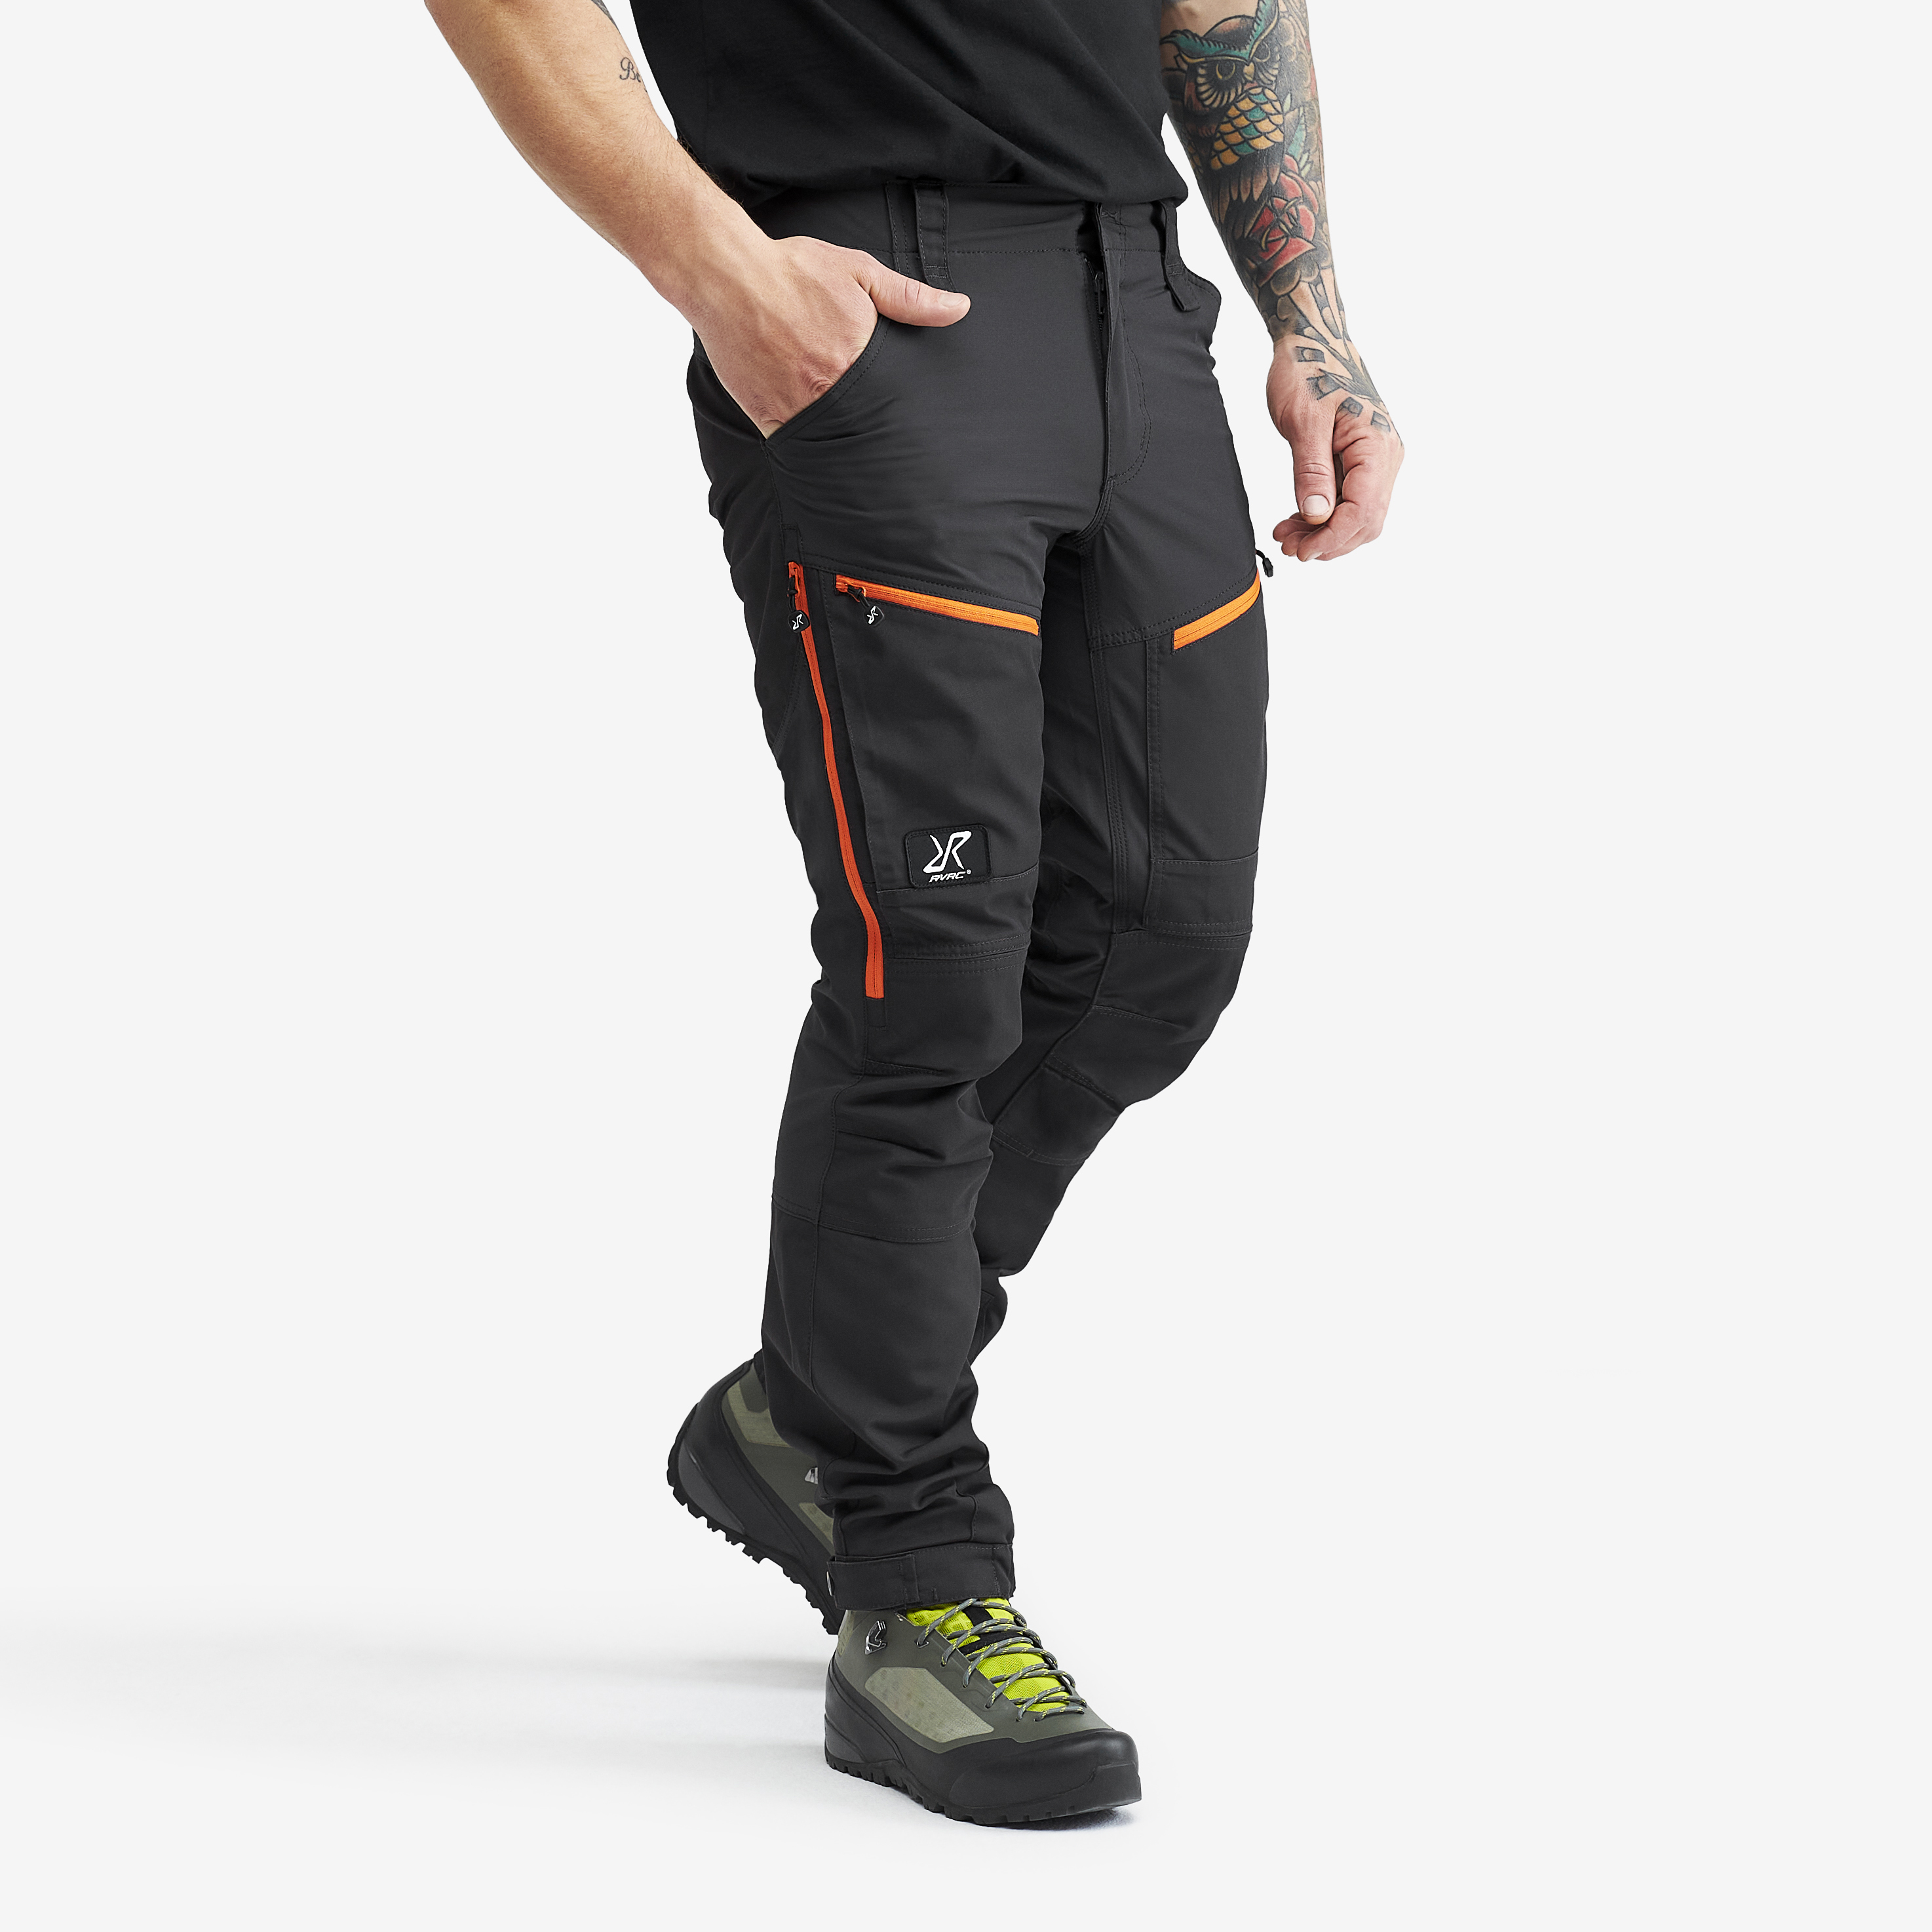 RVRC GP Pro Short Pants Grey/Orange Herren